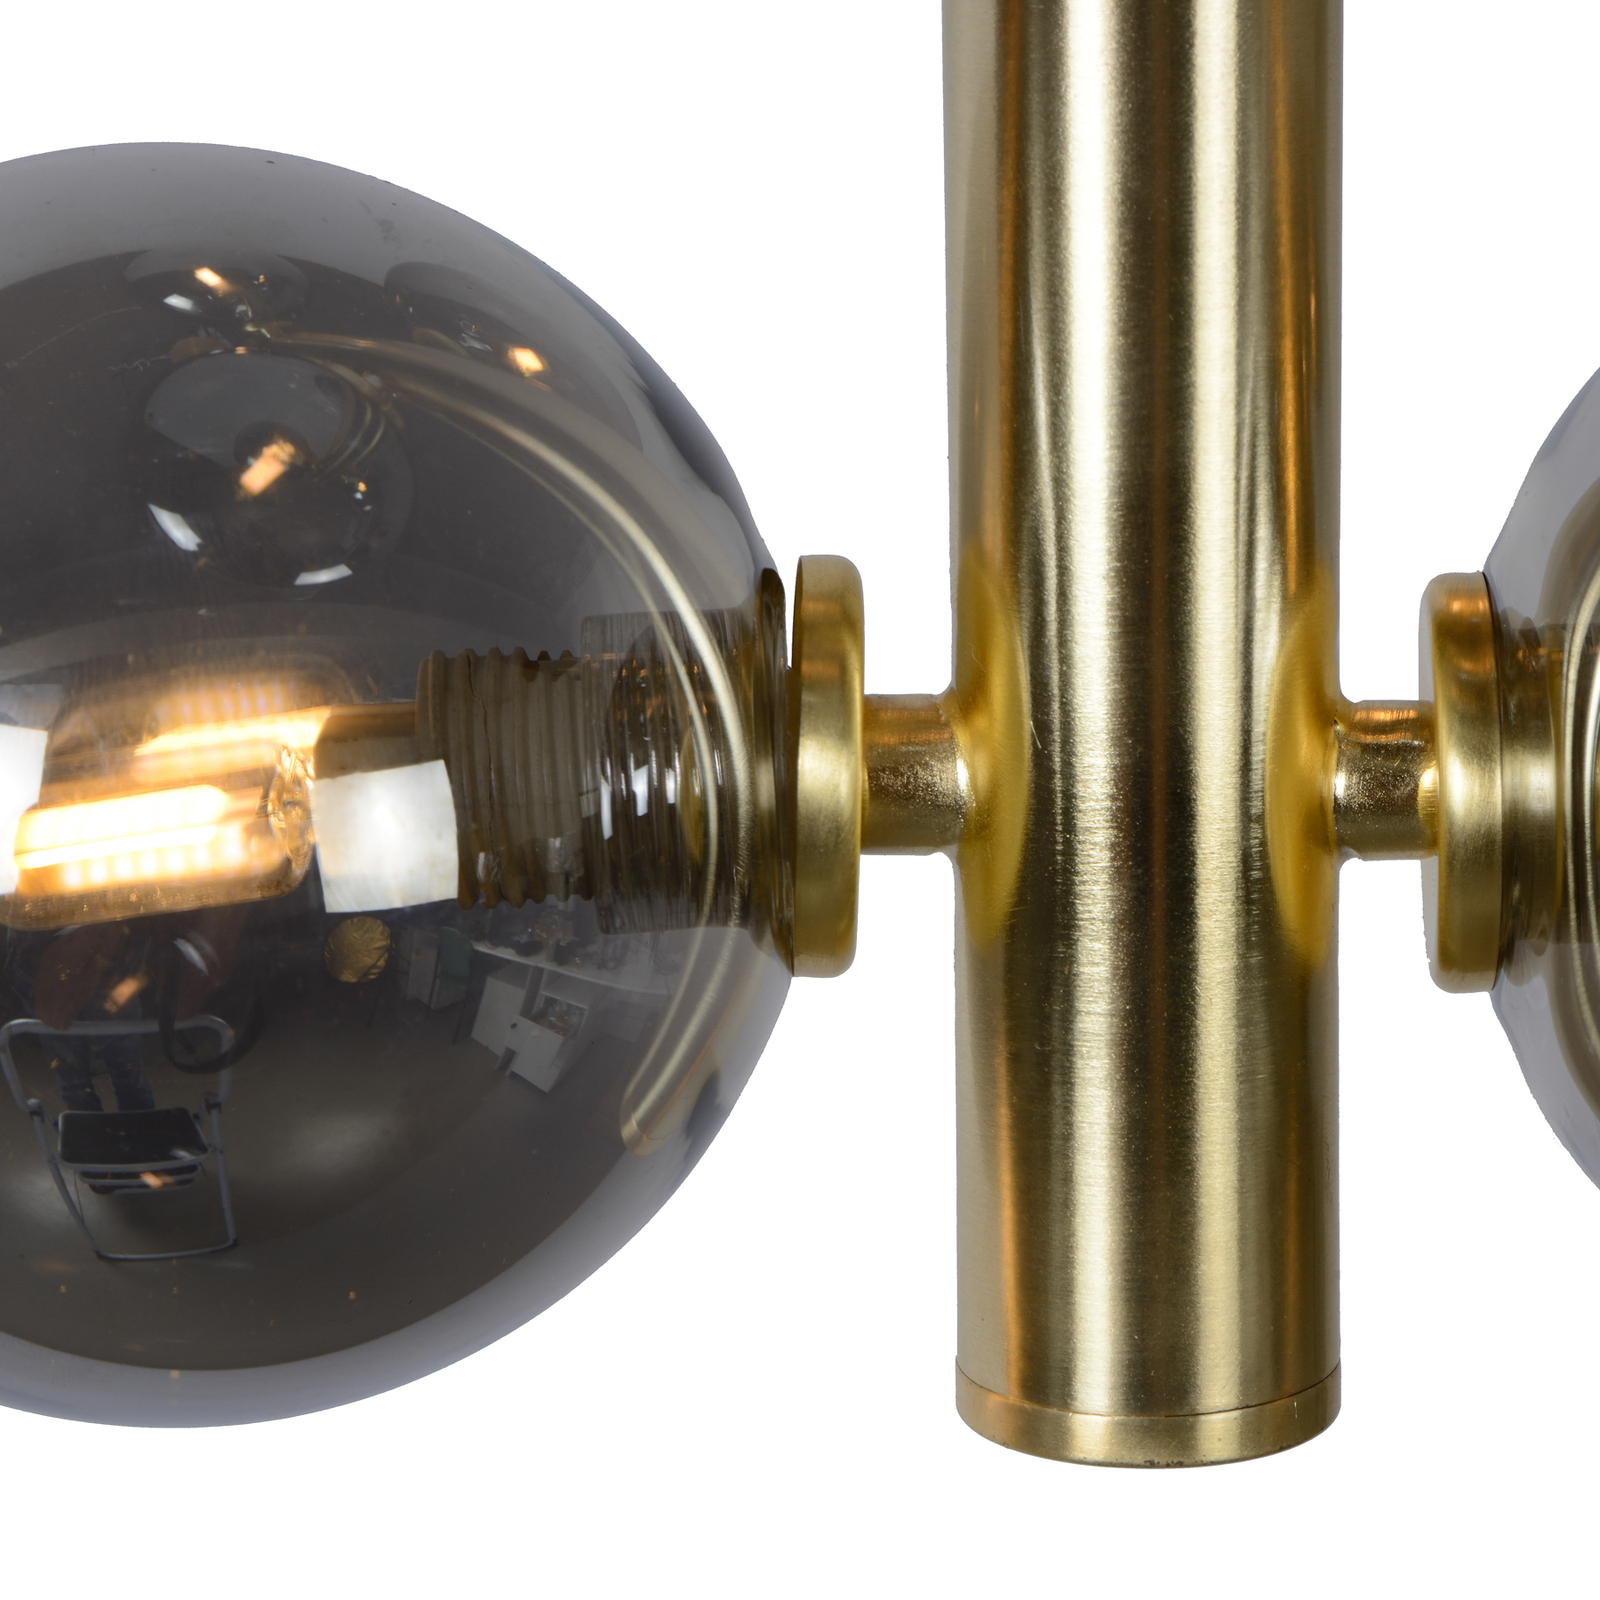 Tycho pendant light, 6-bulb, gold/smoky grey